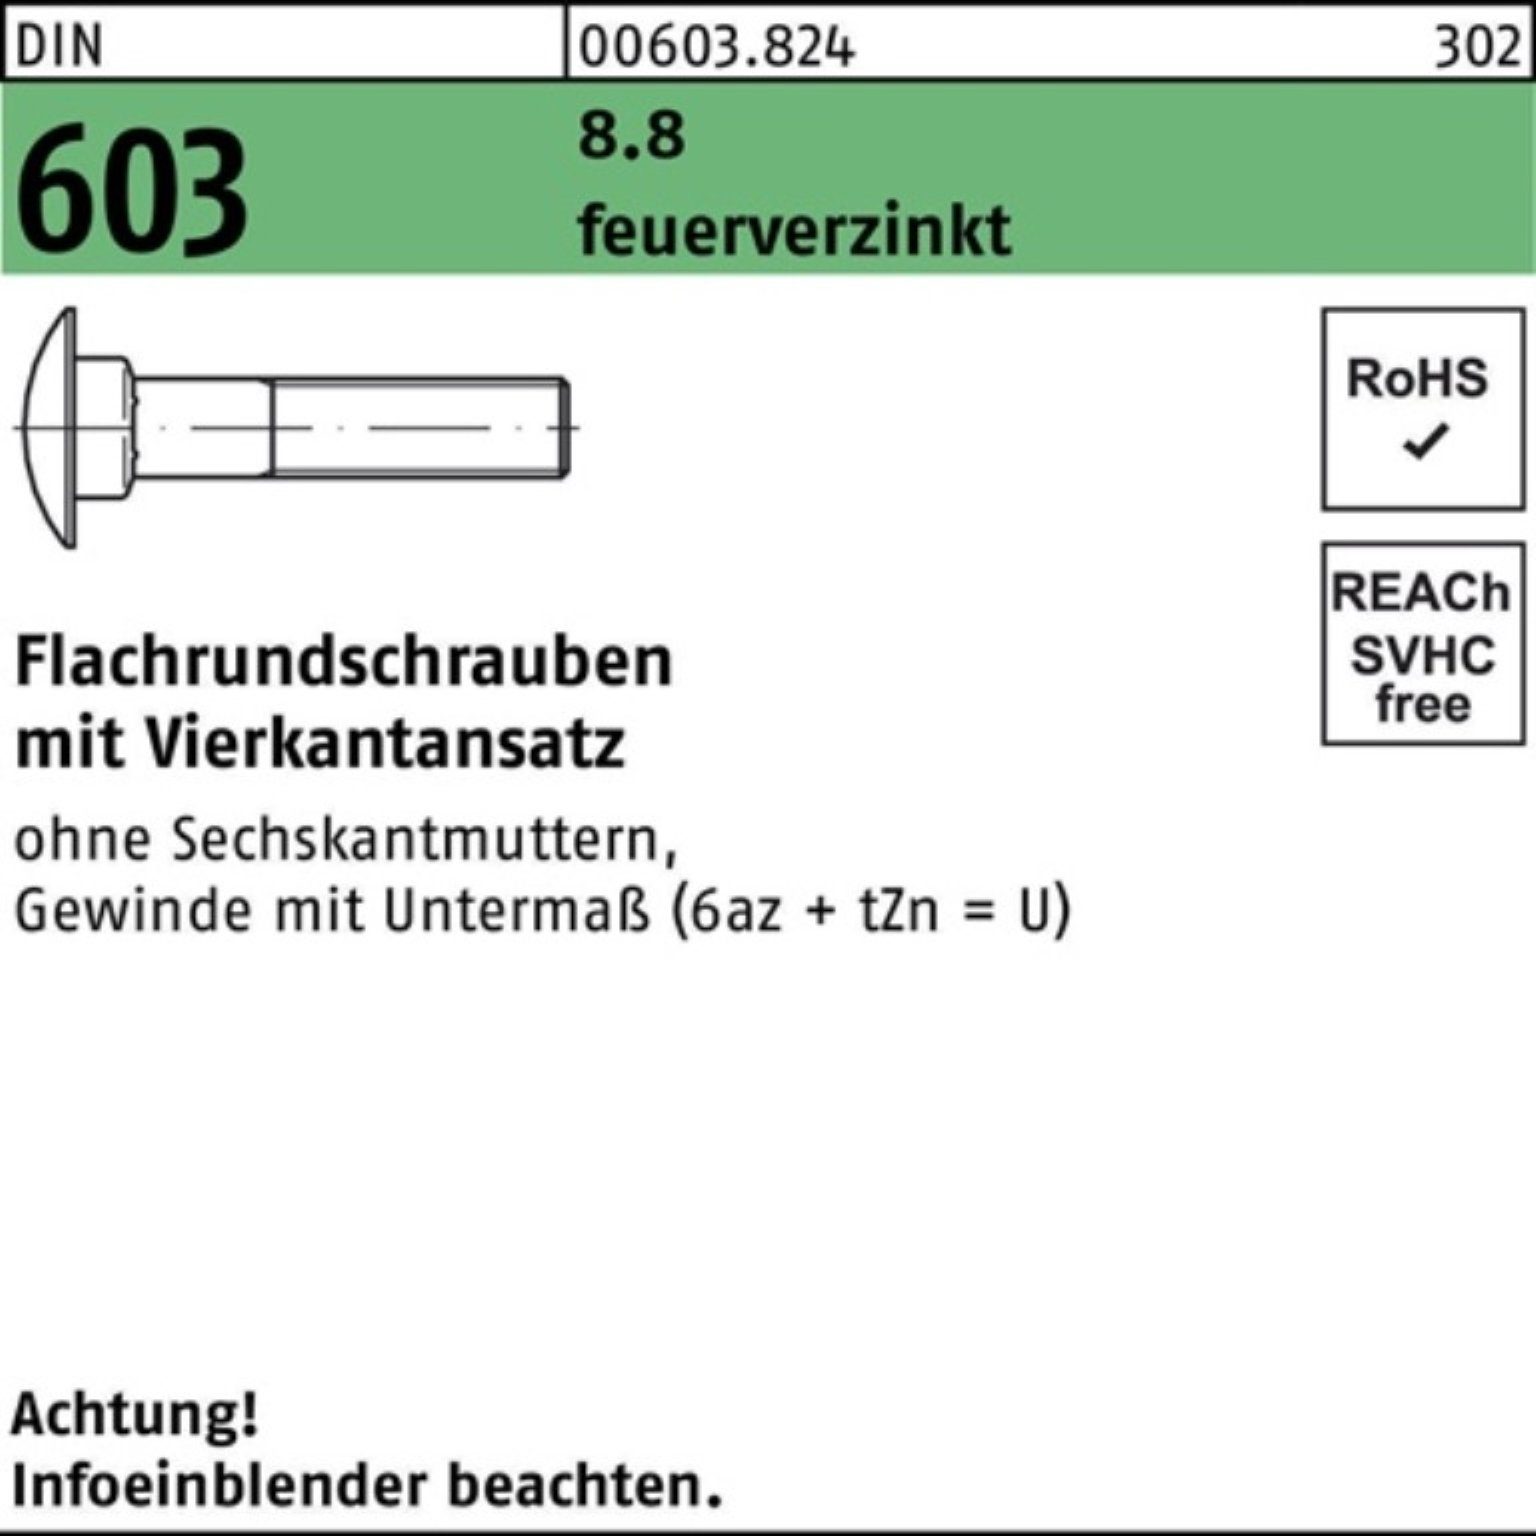 35 DIN feuerv Reyher Flachrundschraube Schraube 8.8 Vierkantansatz 100er M10x 603 Pack